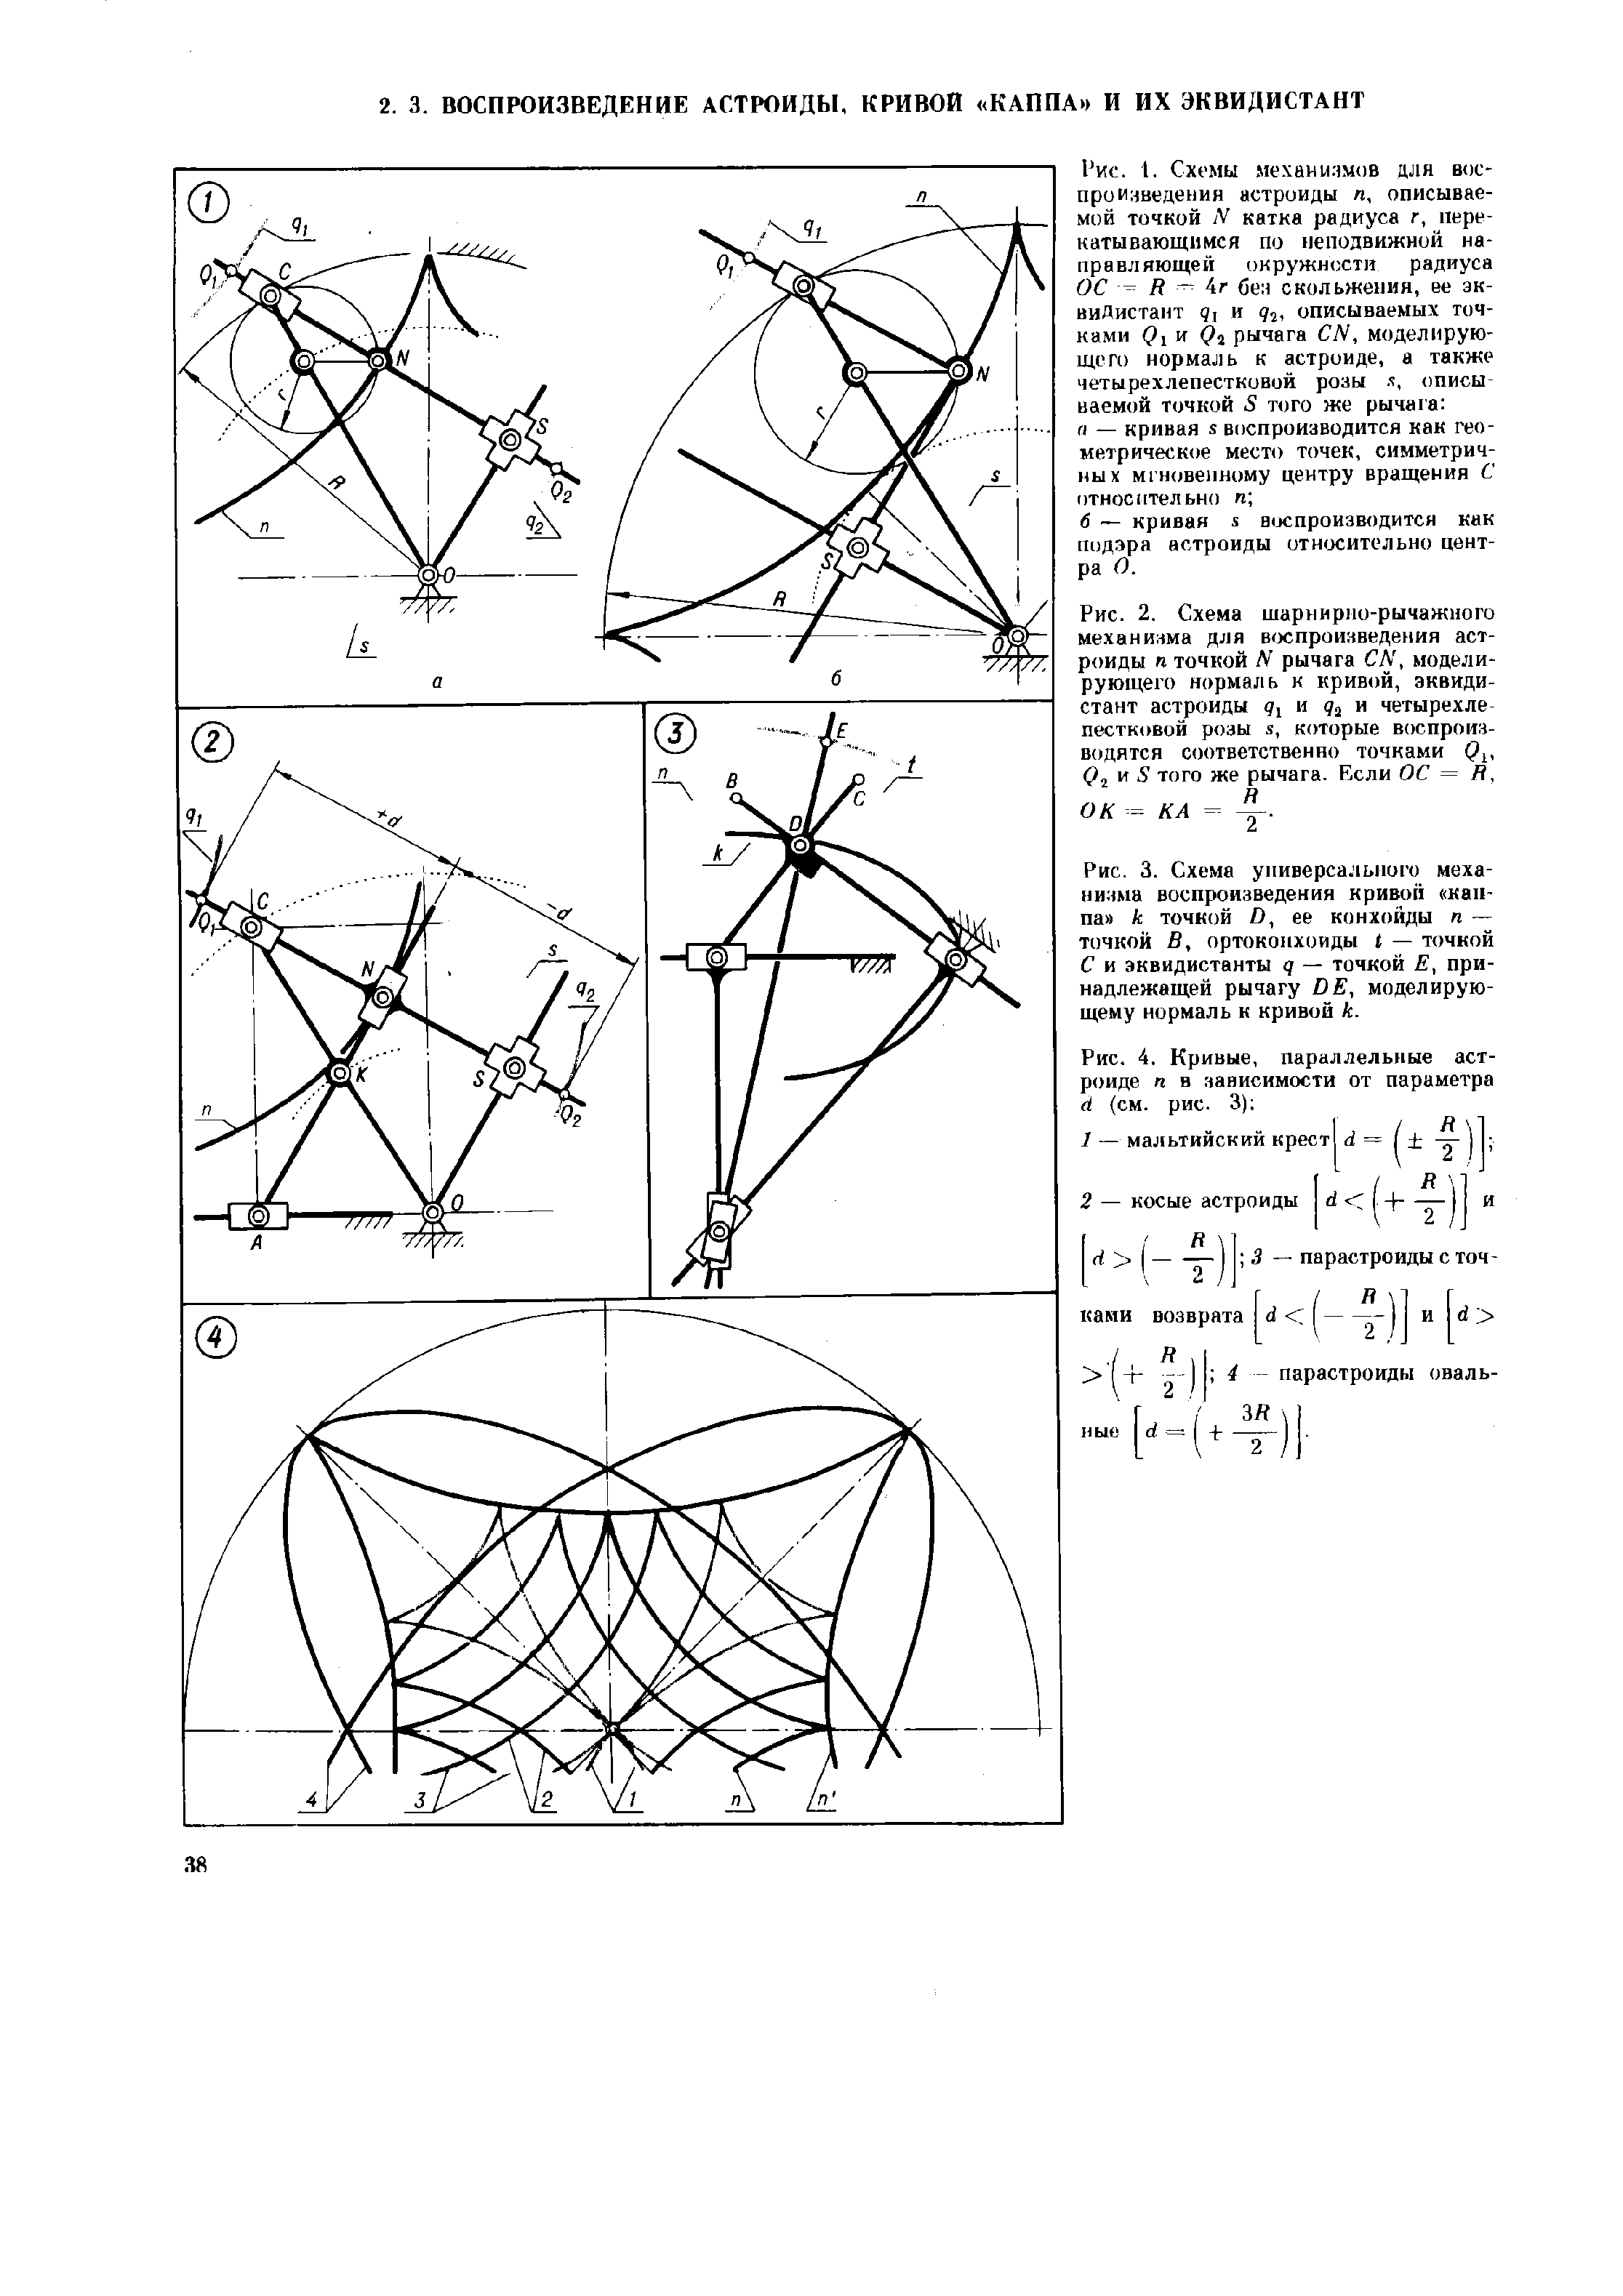 В указанном на рисунке положении механизма состоящего из трех шарнирно соединенных стержней